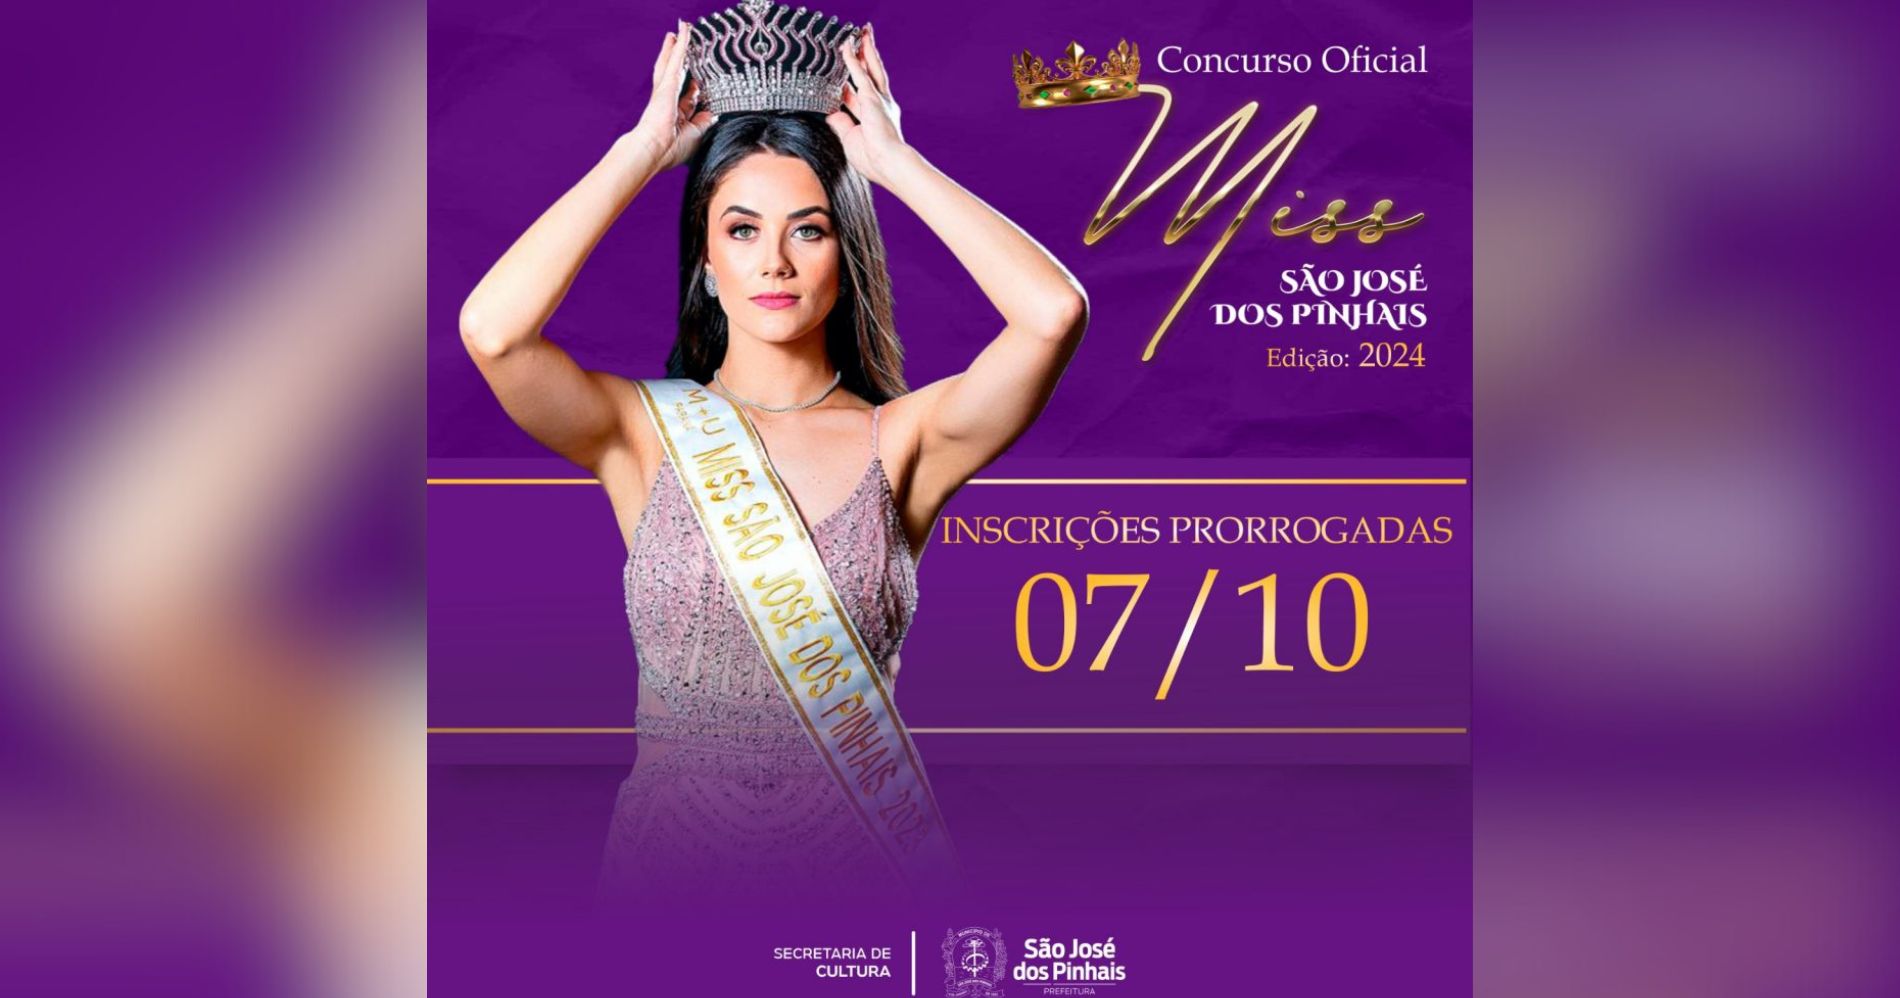 Inscrições para Miss São José dos Pinhais 2024 foram prorrogadas até o dia 7 de outubro